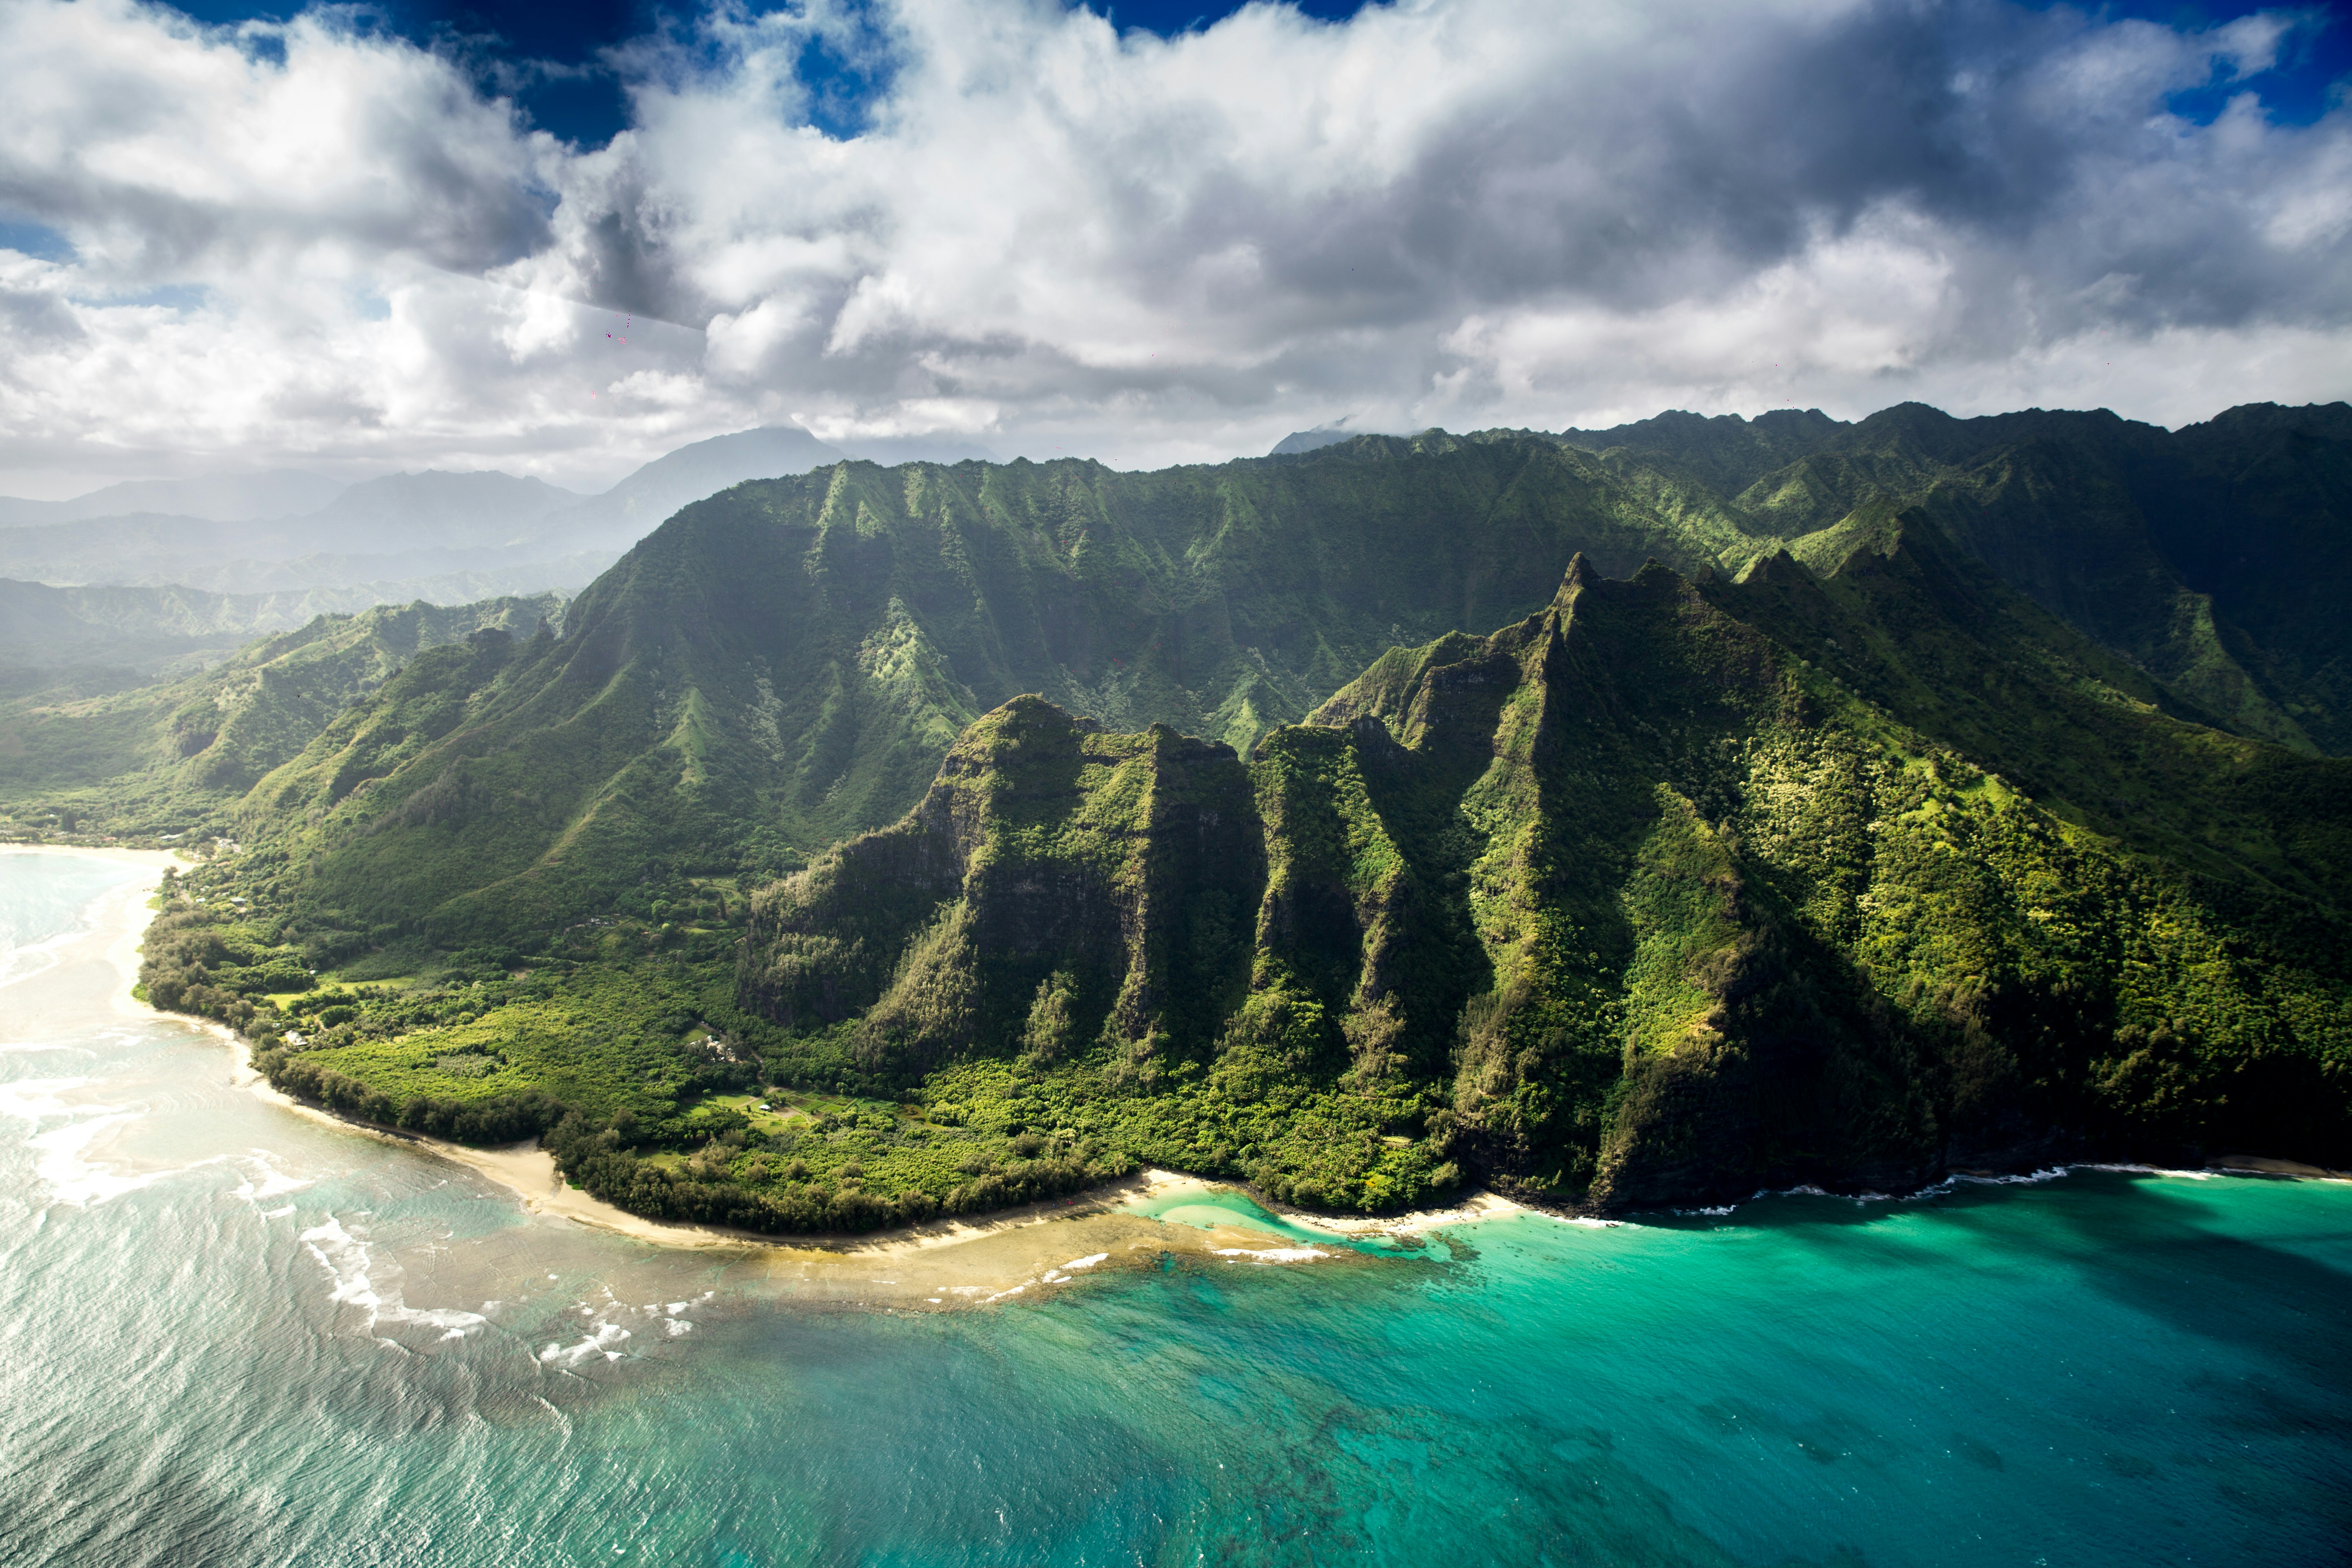 Download 21 hawaii-wallpaper-desktop Hawaii-Maui-Bamboo-Forest-Wallpaper-1920x1080-Hd-.jpg